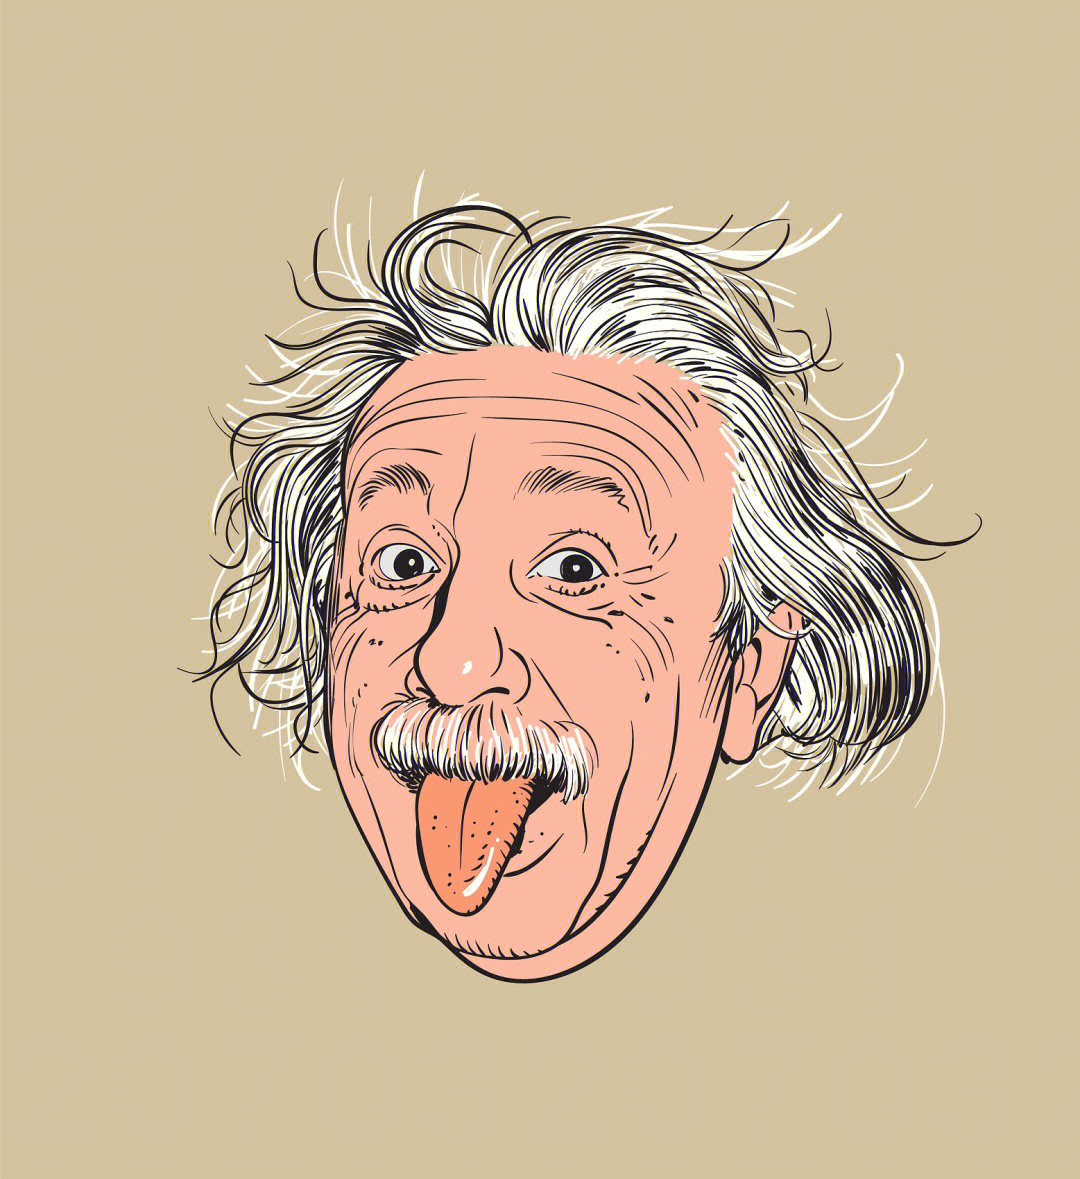 爱因斯坦的人际关系